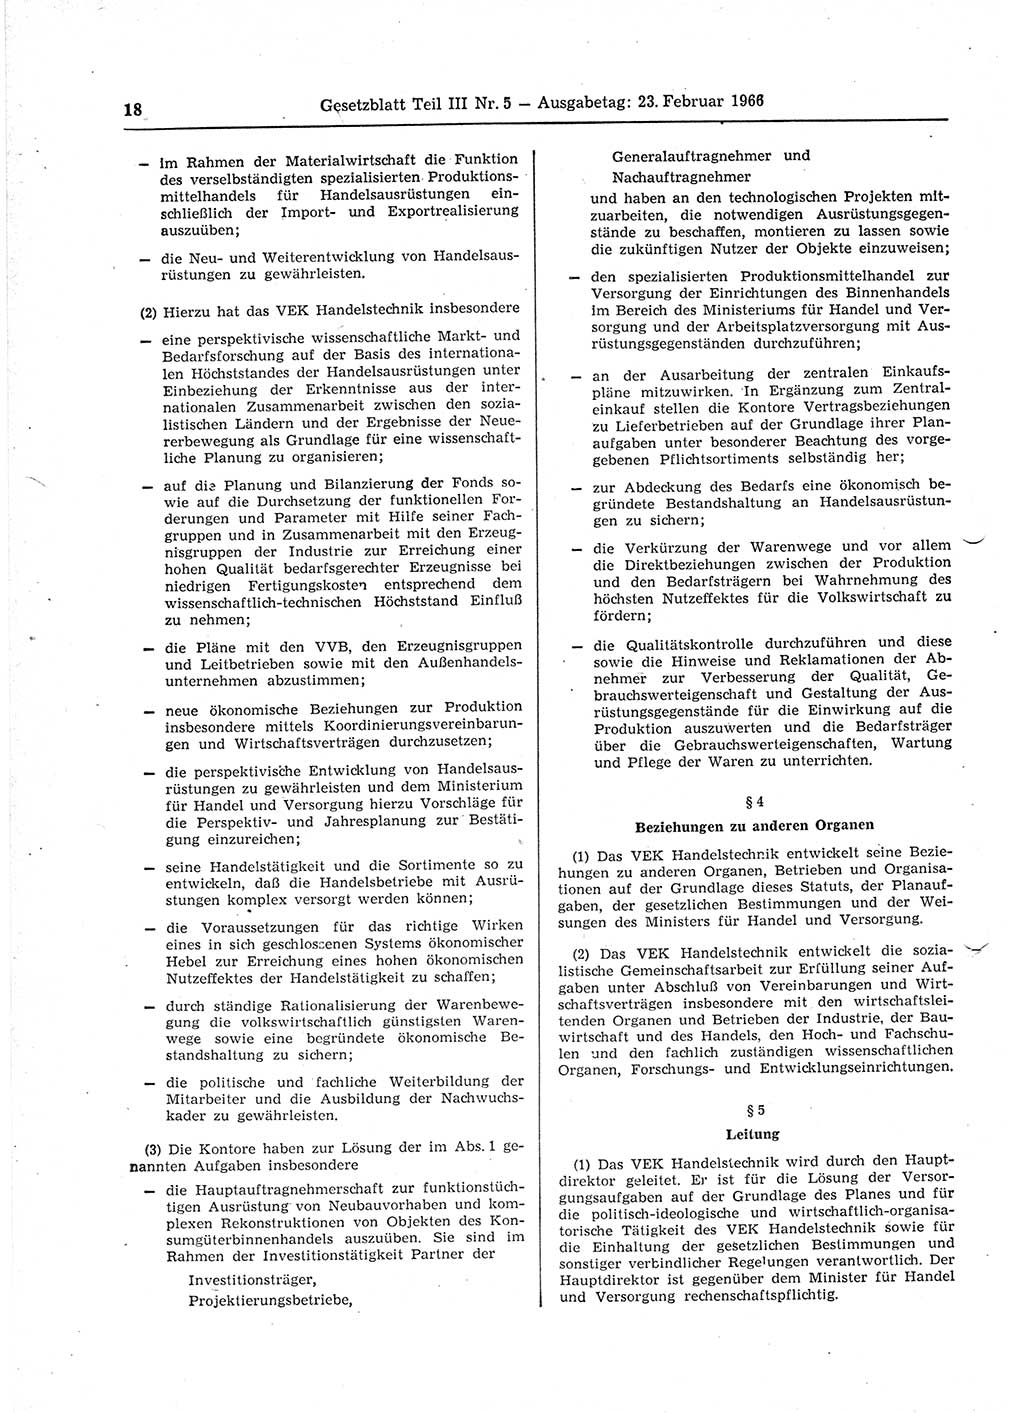 Gesetzblatt (GBl.) der Deutschen Demokratischen Republik (DDR) Teil ⅠⅠⅠ 1966, Seite 18 (GBl. DDR ⅠⅠⅠ 1966, S. 18)